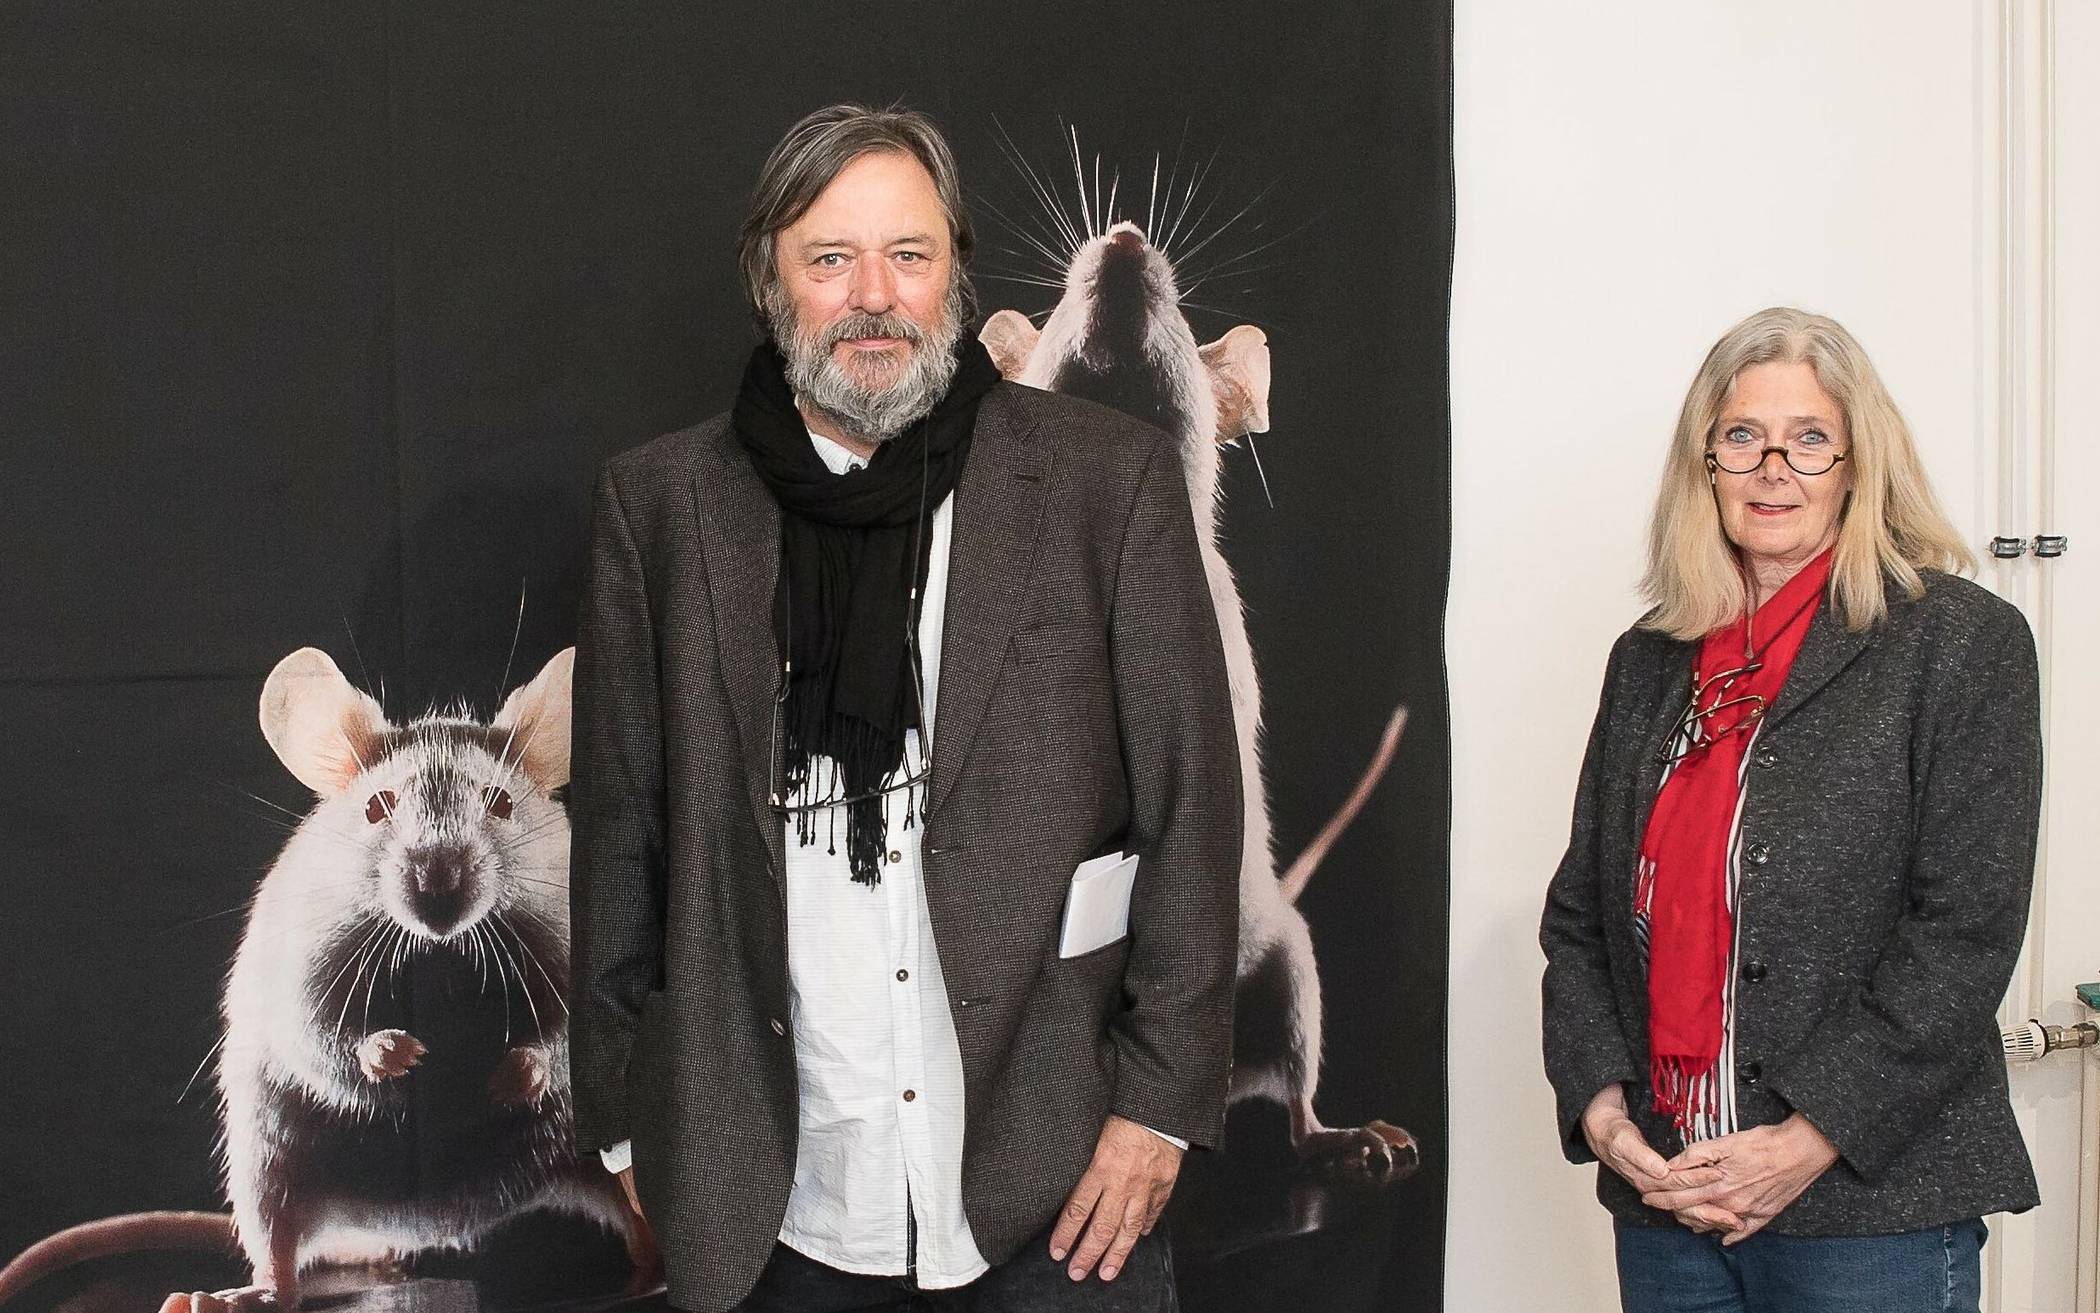  Albert Glöckner, Vorsitzender der „Freunde des Kulturzentrums Sinsteden“, mit den Fotografen Hans-Jürgen und Heidi Koch, die auch das oben stehende Bild zur Verfügung gestellt haben. 	Fotos: RKN. 